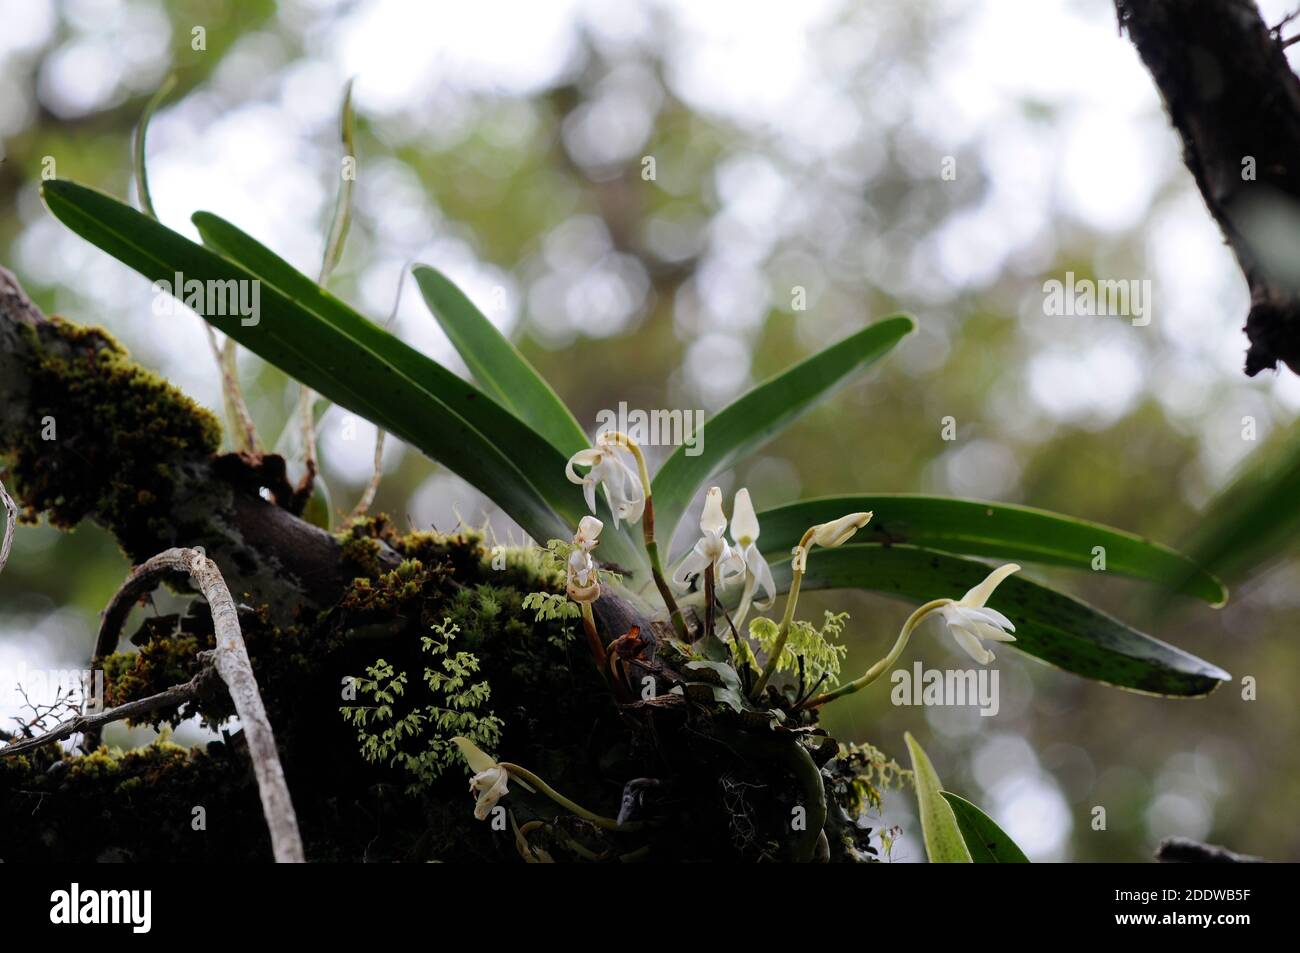 Orquídea endémica Jumellea triquetra creciendo en una rama de árbol en Selva tropical en la isla de la Reunión Foto de stock